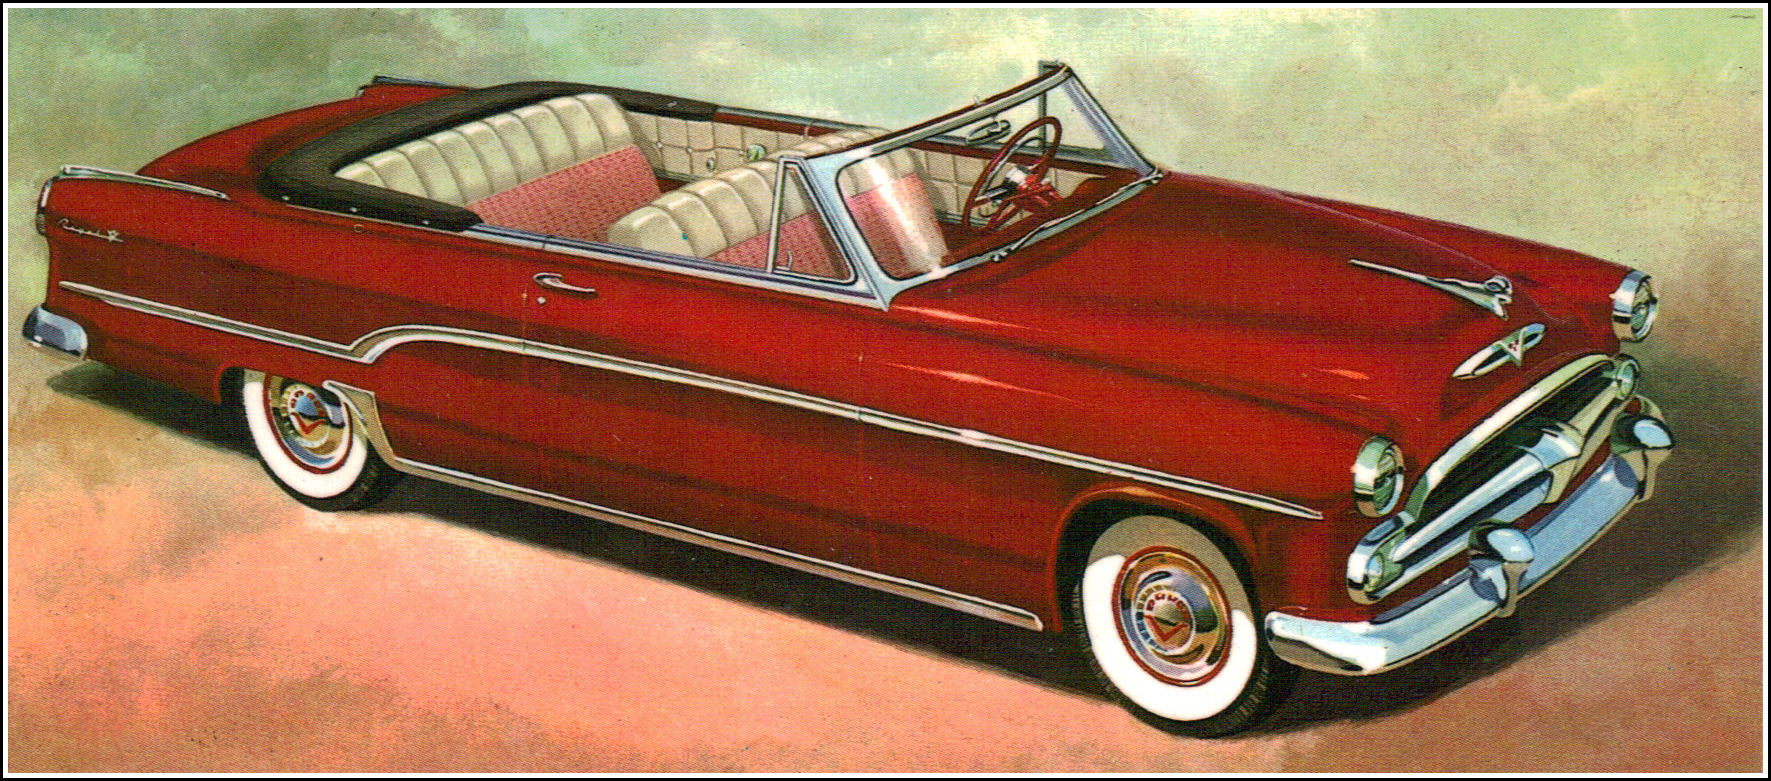 1954 Dodge Royal Convertible | Flickr - Photo Sharing!